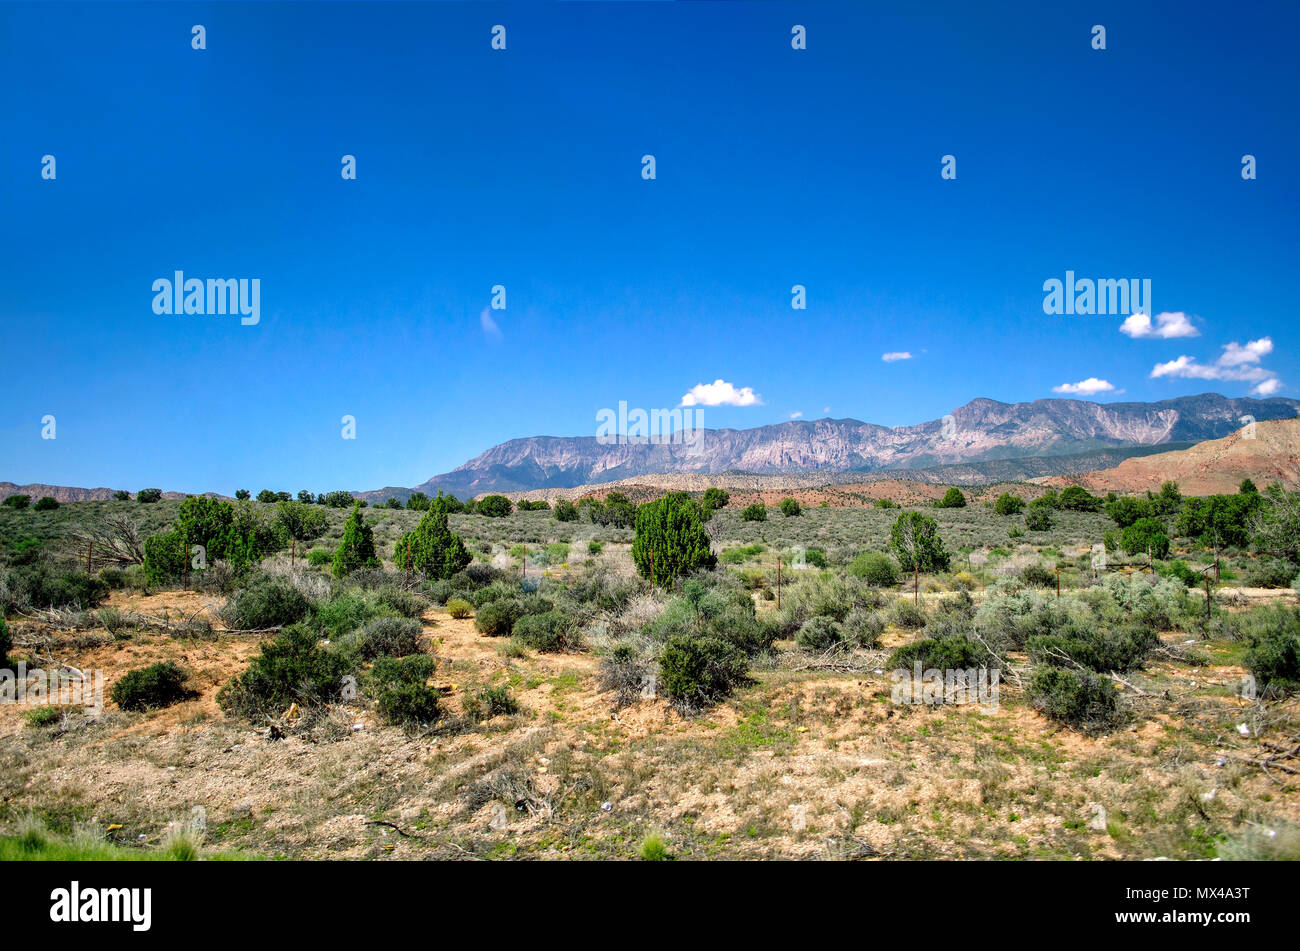 Guardando attraverso un deserto valle verde con spazzole a montagne sullo sfondo sotto un luminoso cielo blu con piccole nuvole bianche. Foto Stock